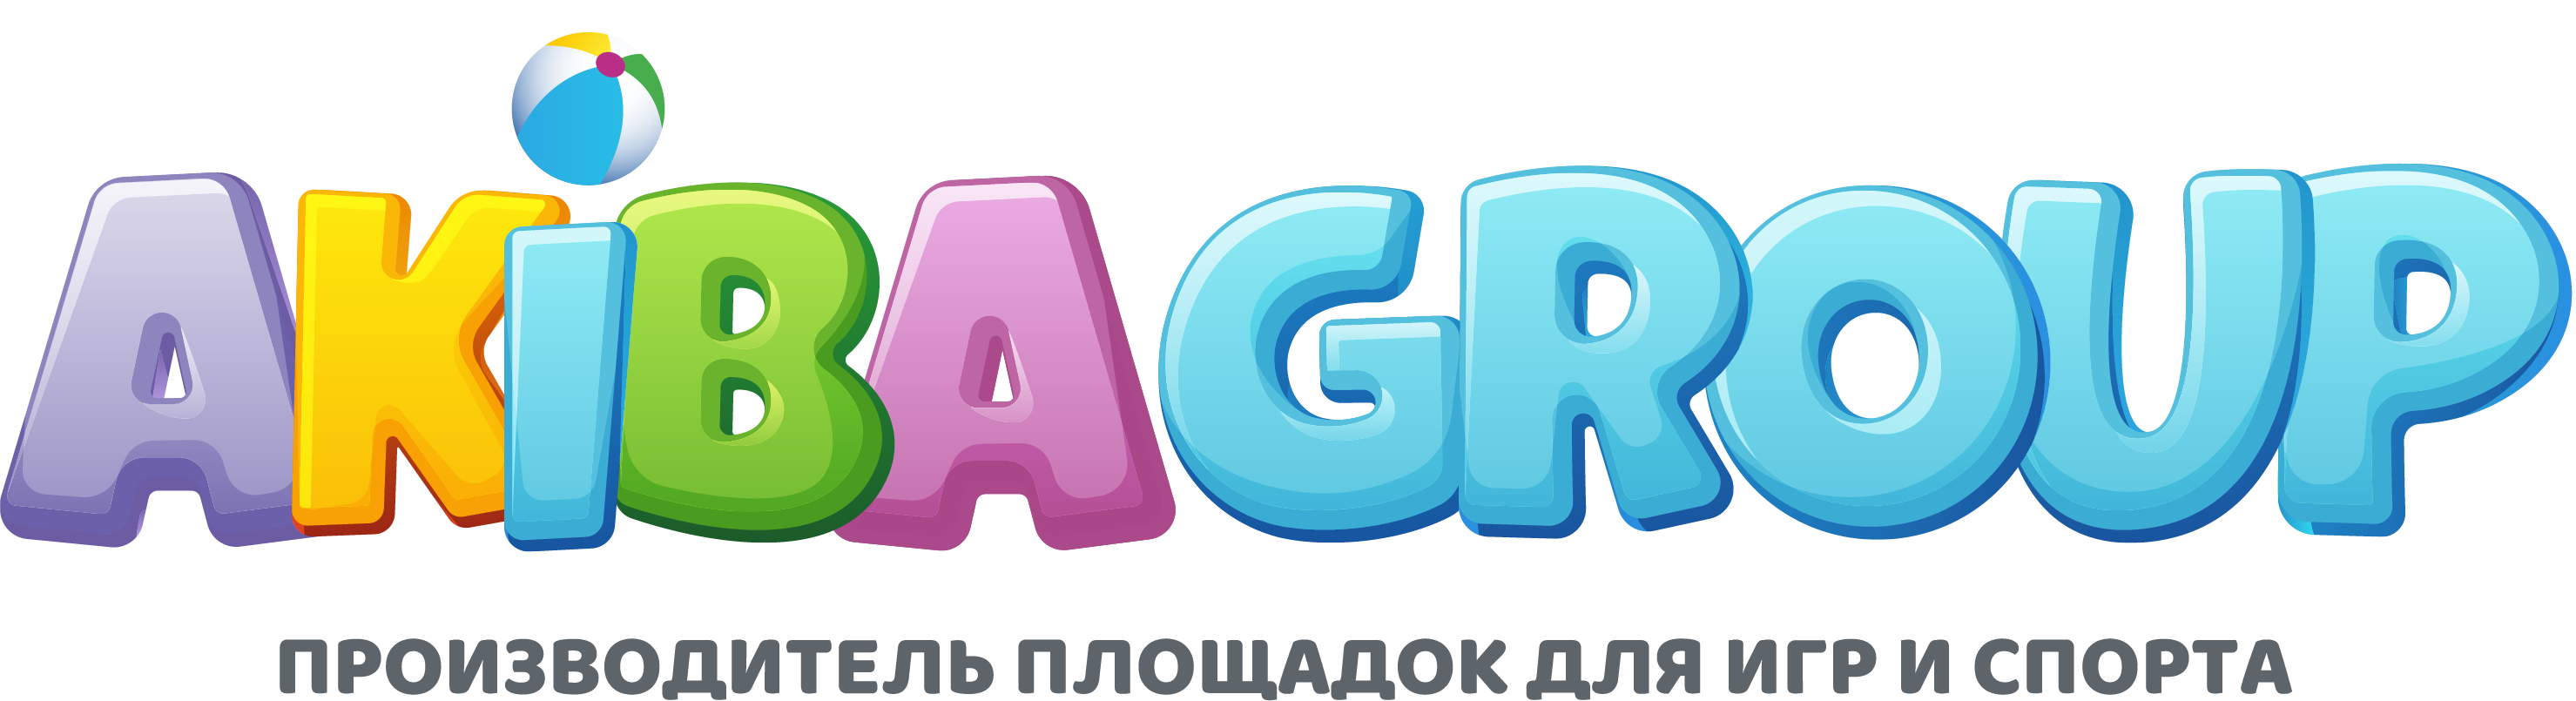 Производитель площадок для игр и спорта Akiba.ru